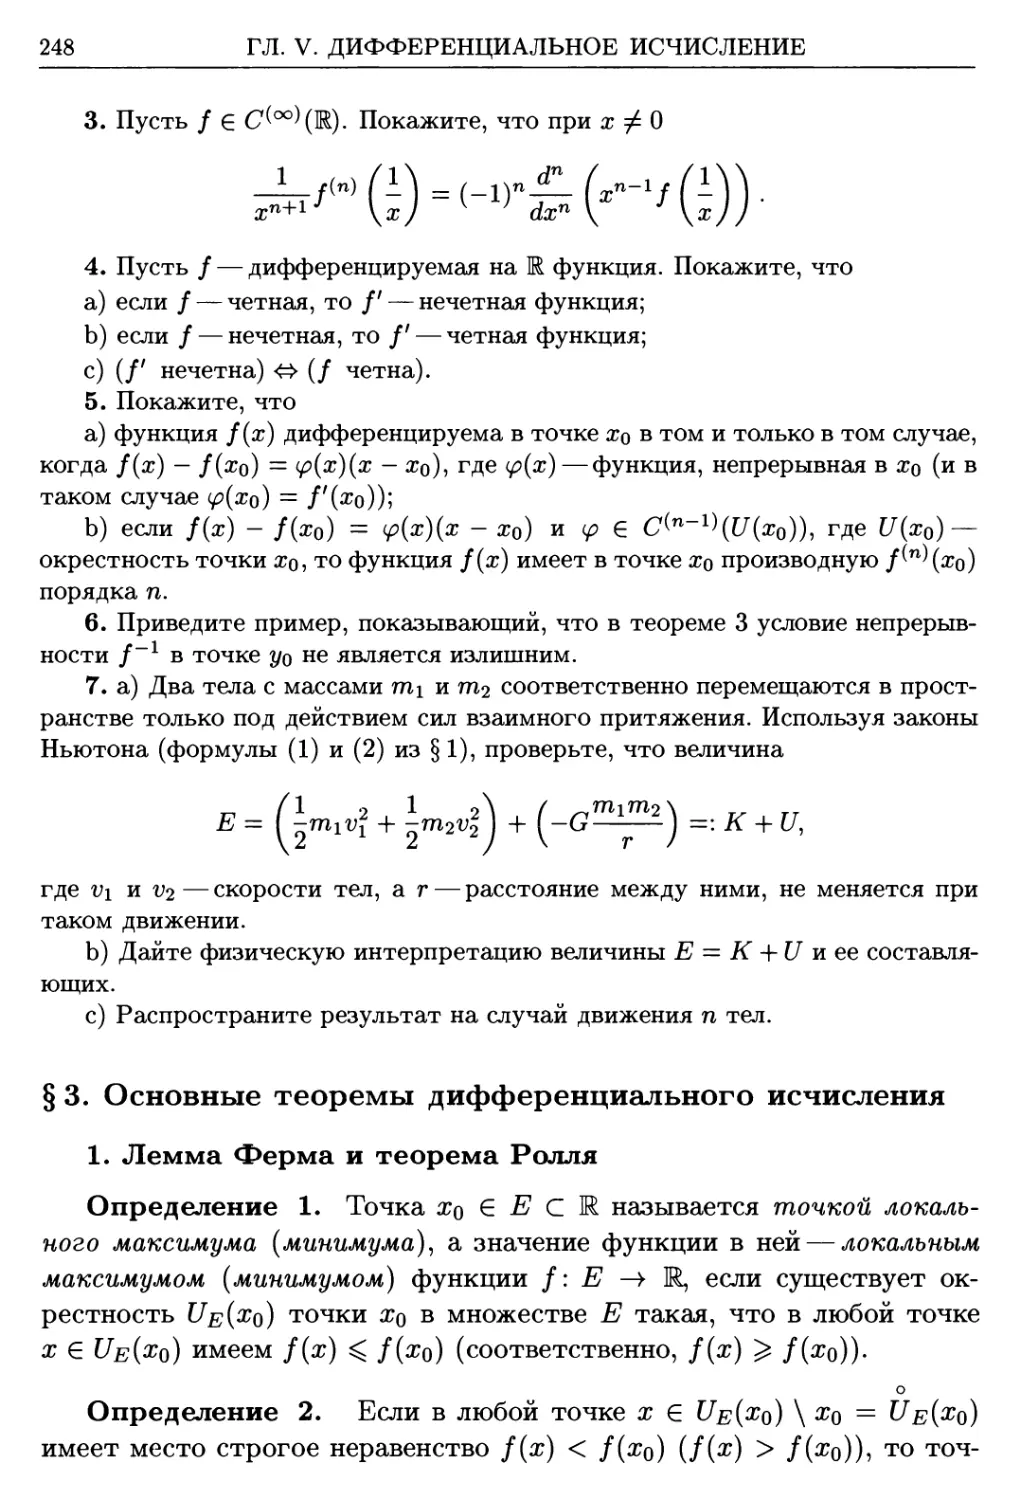 §3. Основные теоремы дифференциального исчисления